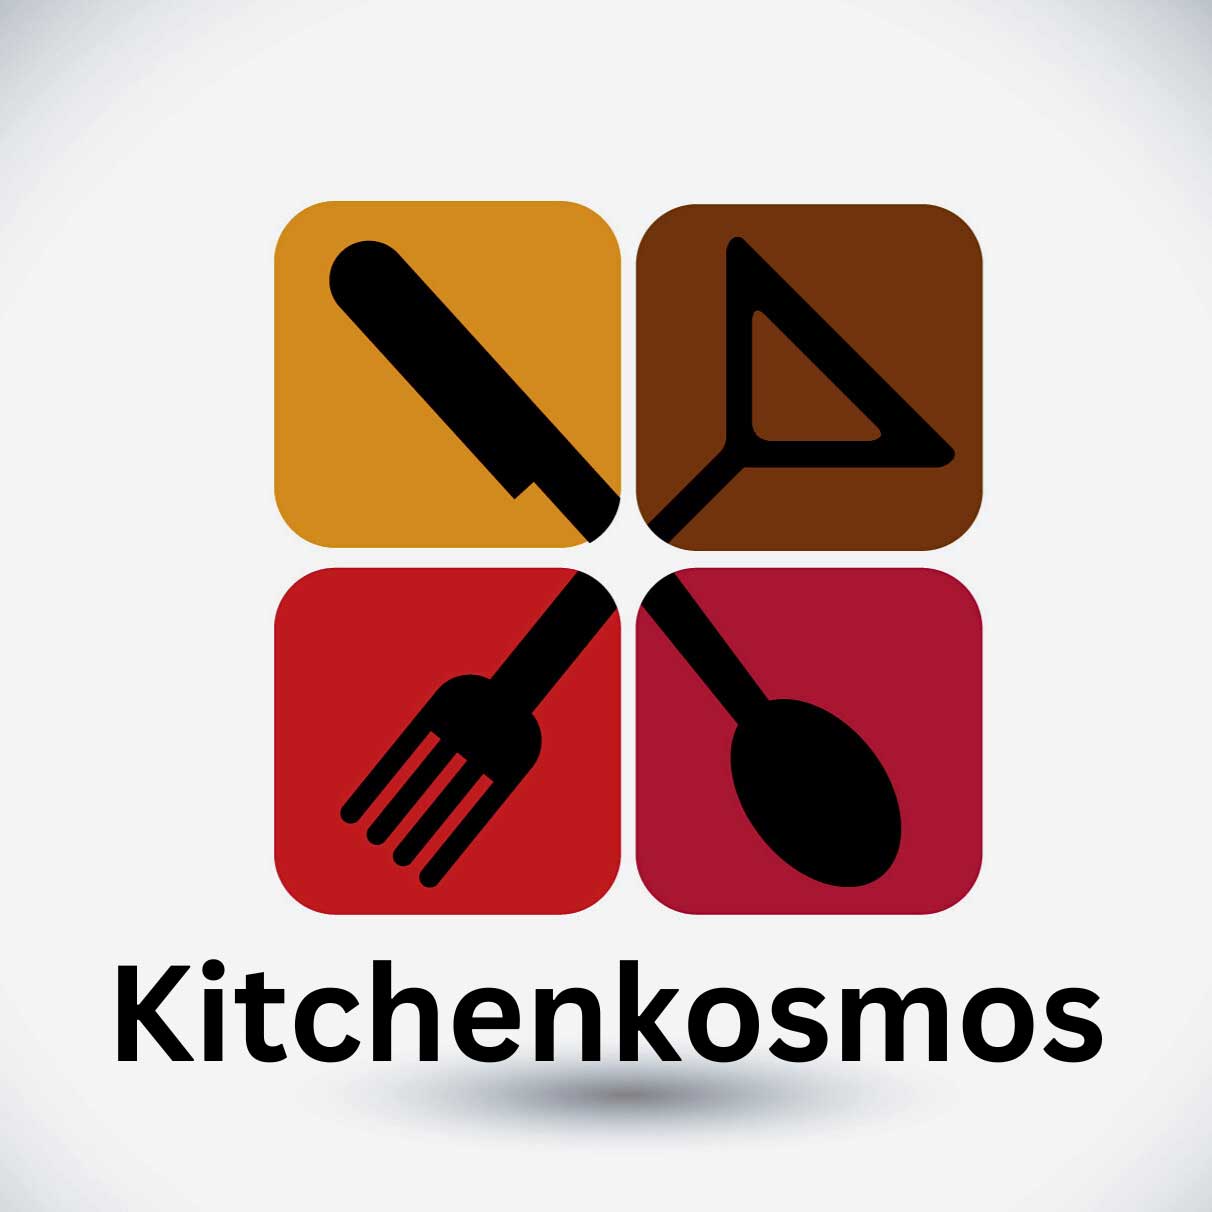 Business logo of Kitchenkosmos